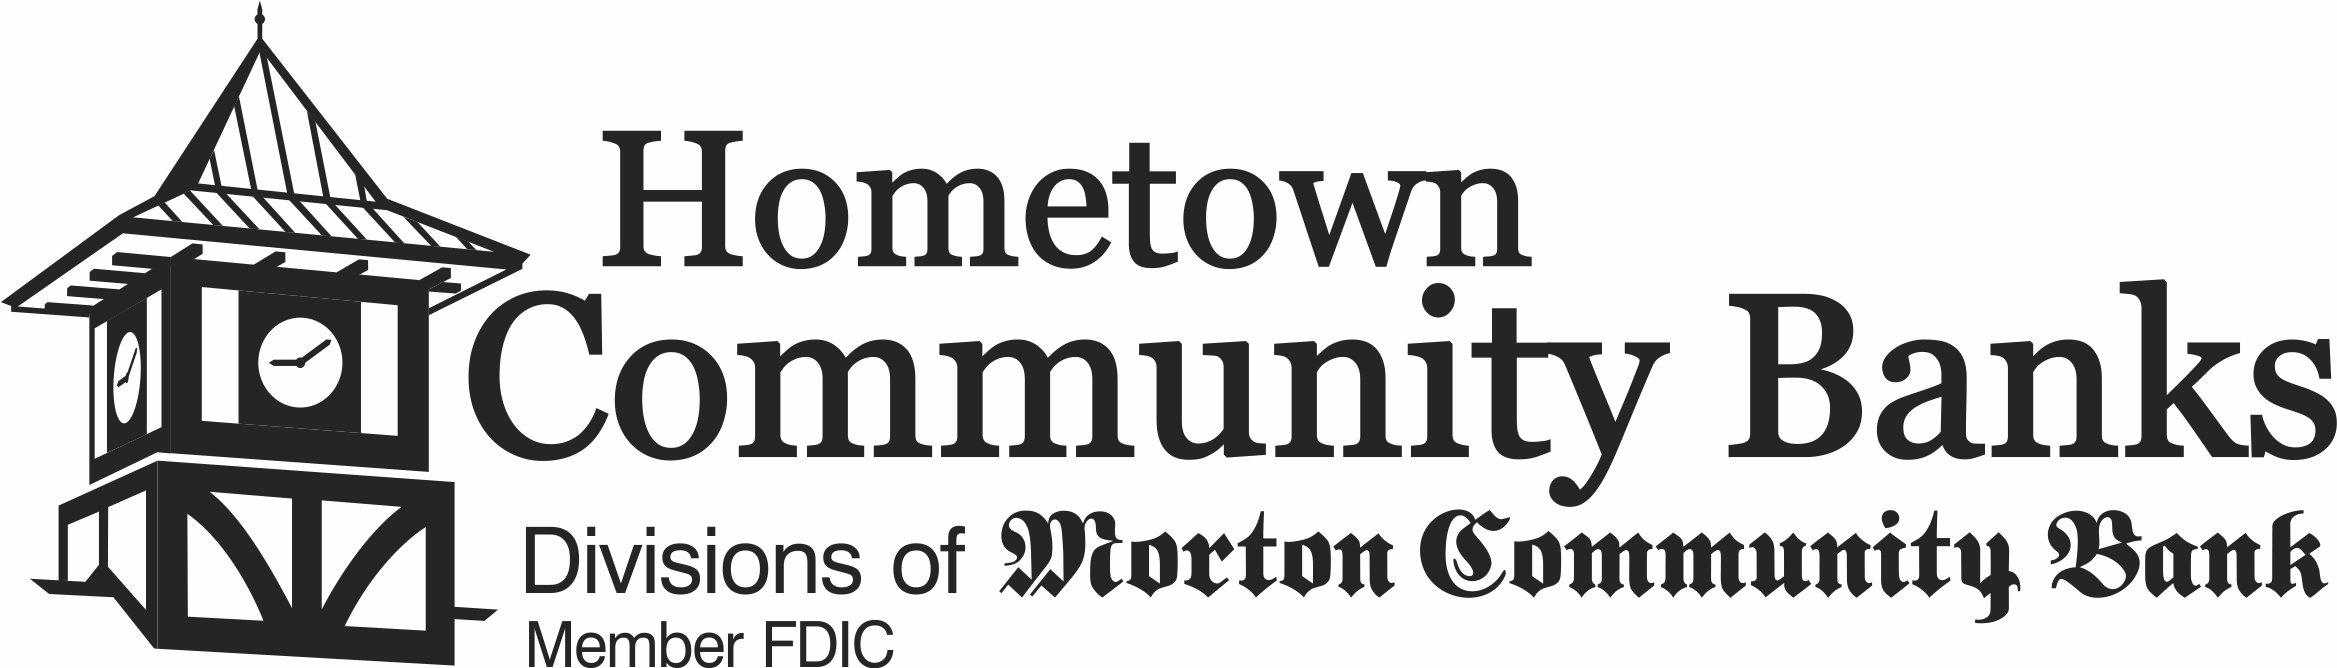 Hometown Comm Banks logo.jpg